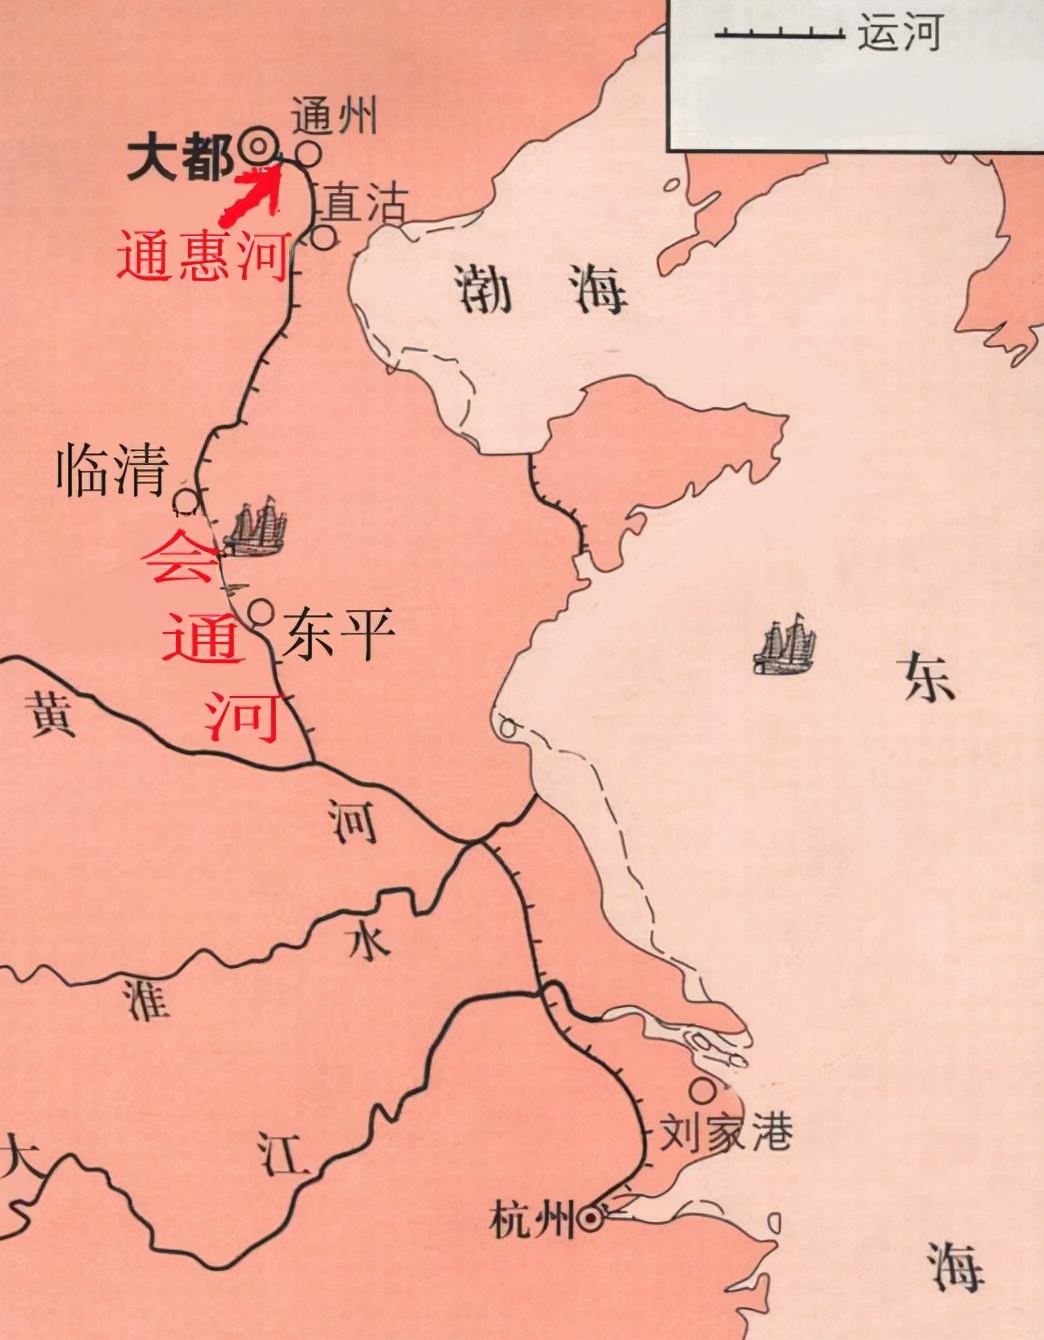 省份代大全-探索中国省份代码背后的独特故事与文化魅力